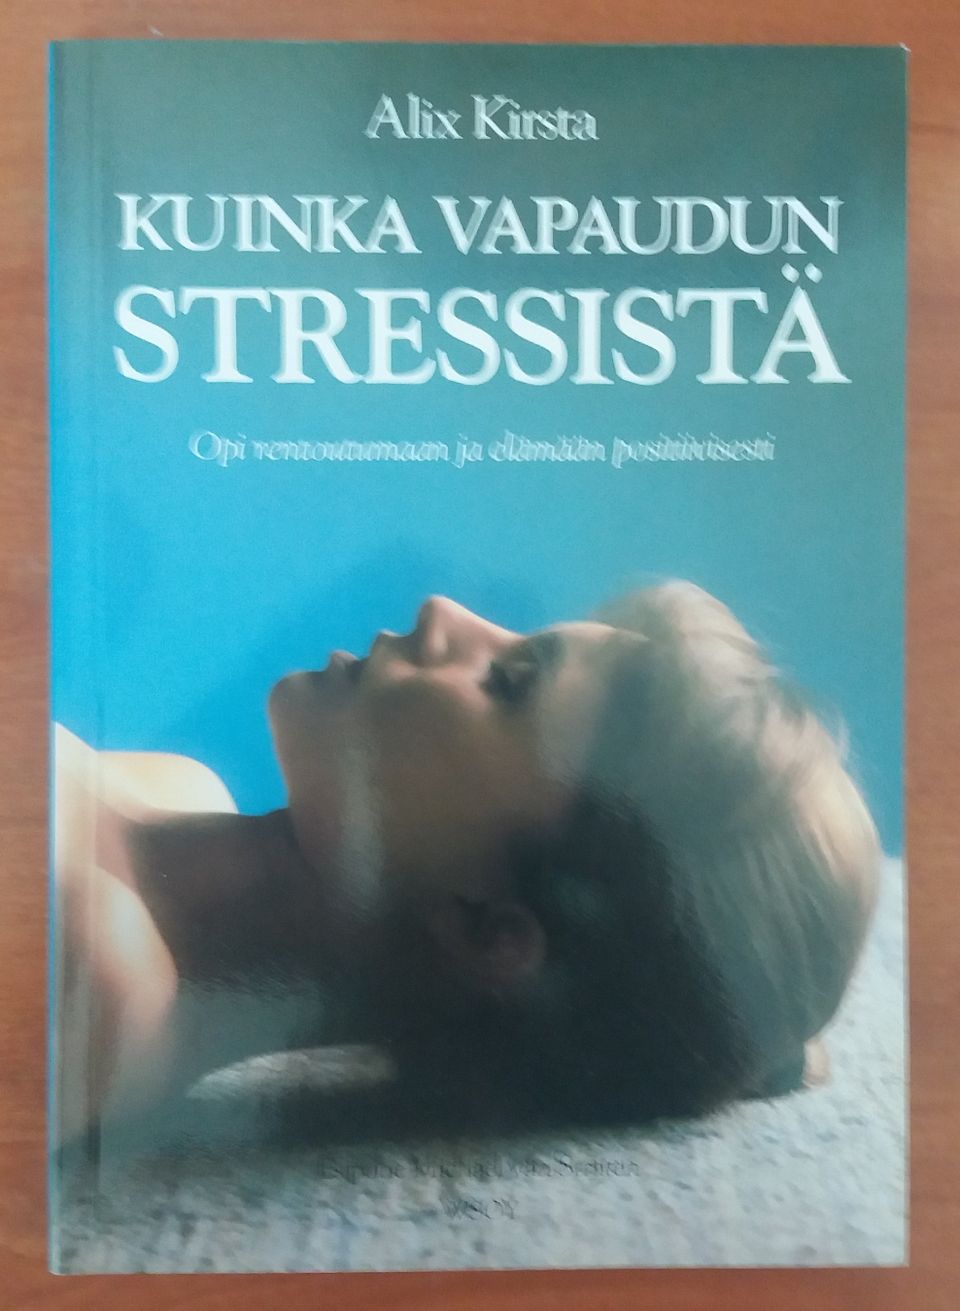 Alix Kirsta KUINKA VAPAUDUN STRESSISTÄ Wsoy 1992